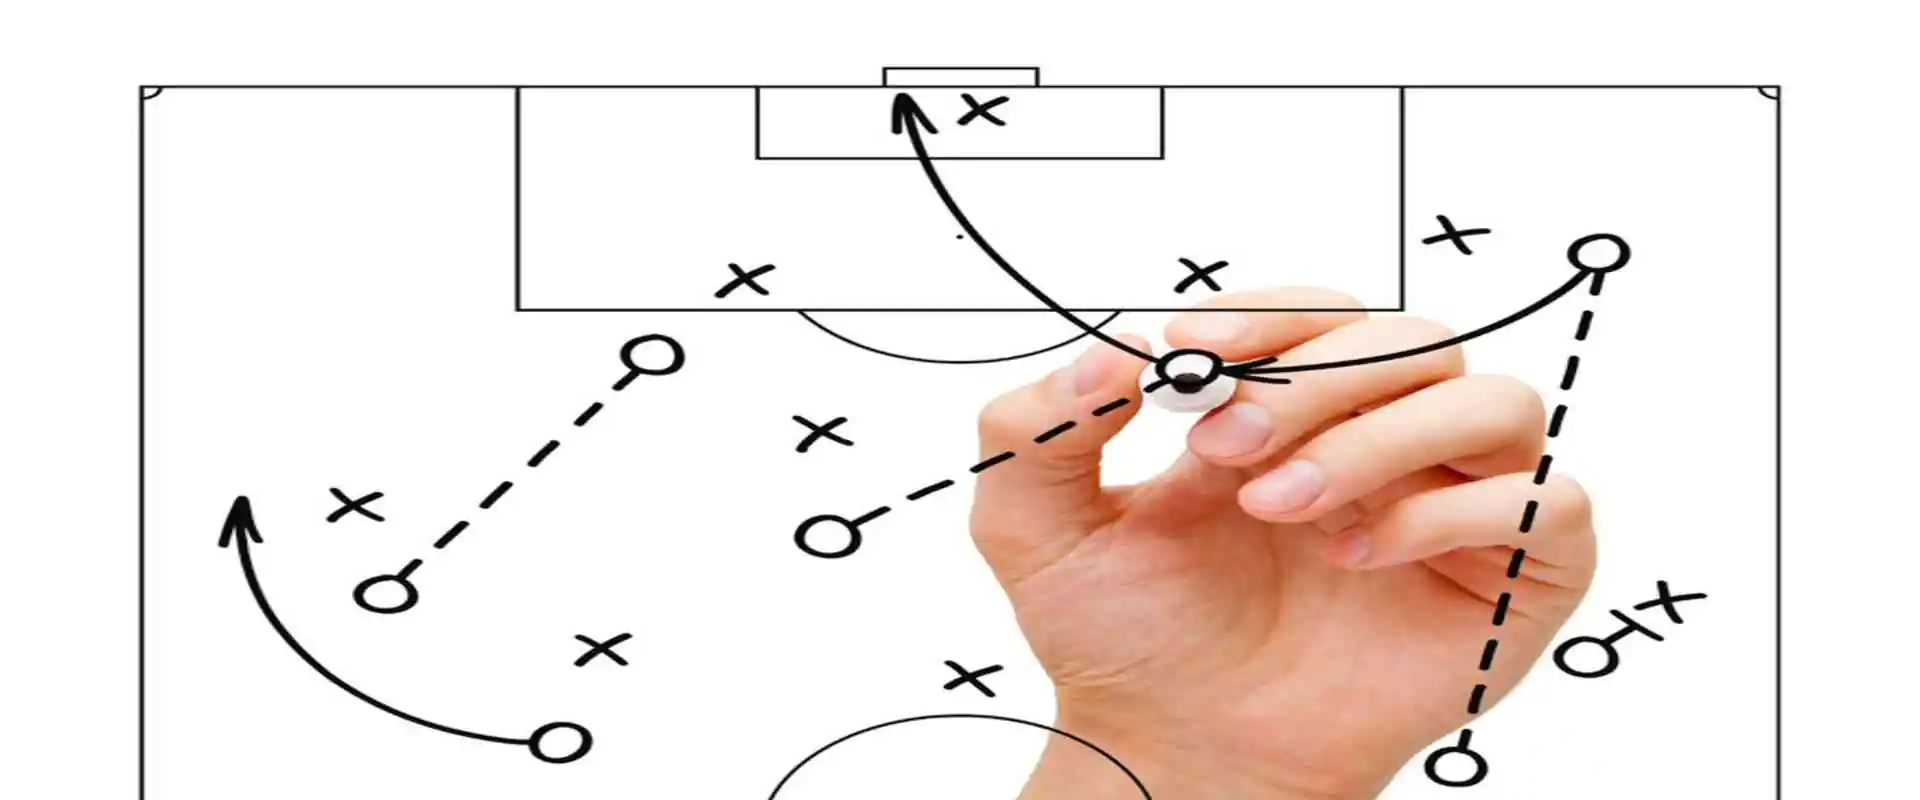 Sports Analytics Benefits: Companies Redefine Game Strategies